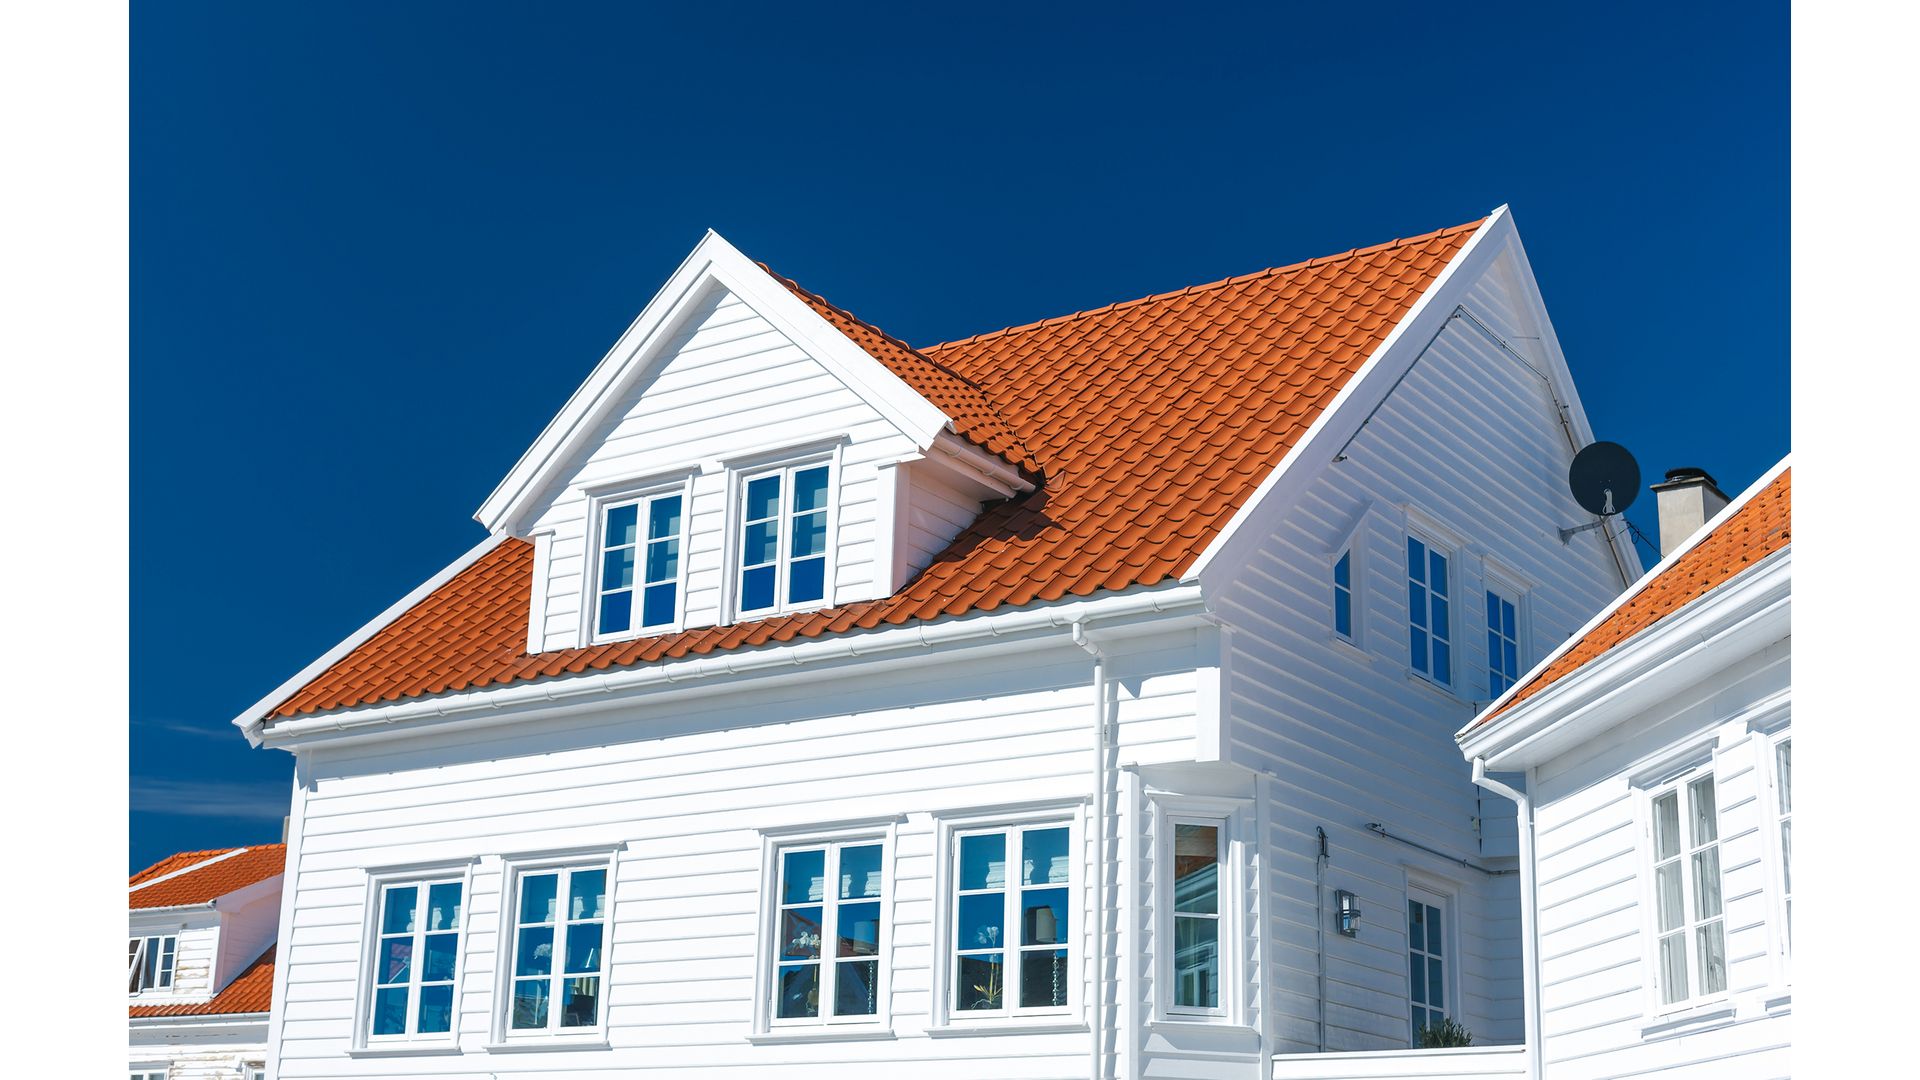 Hus med trä- och aluminiumfönster